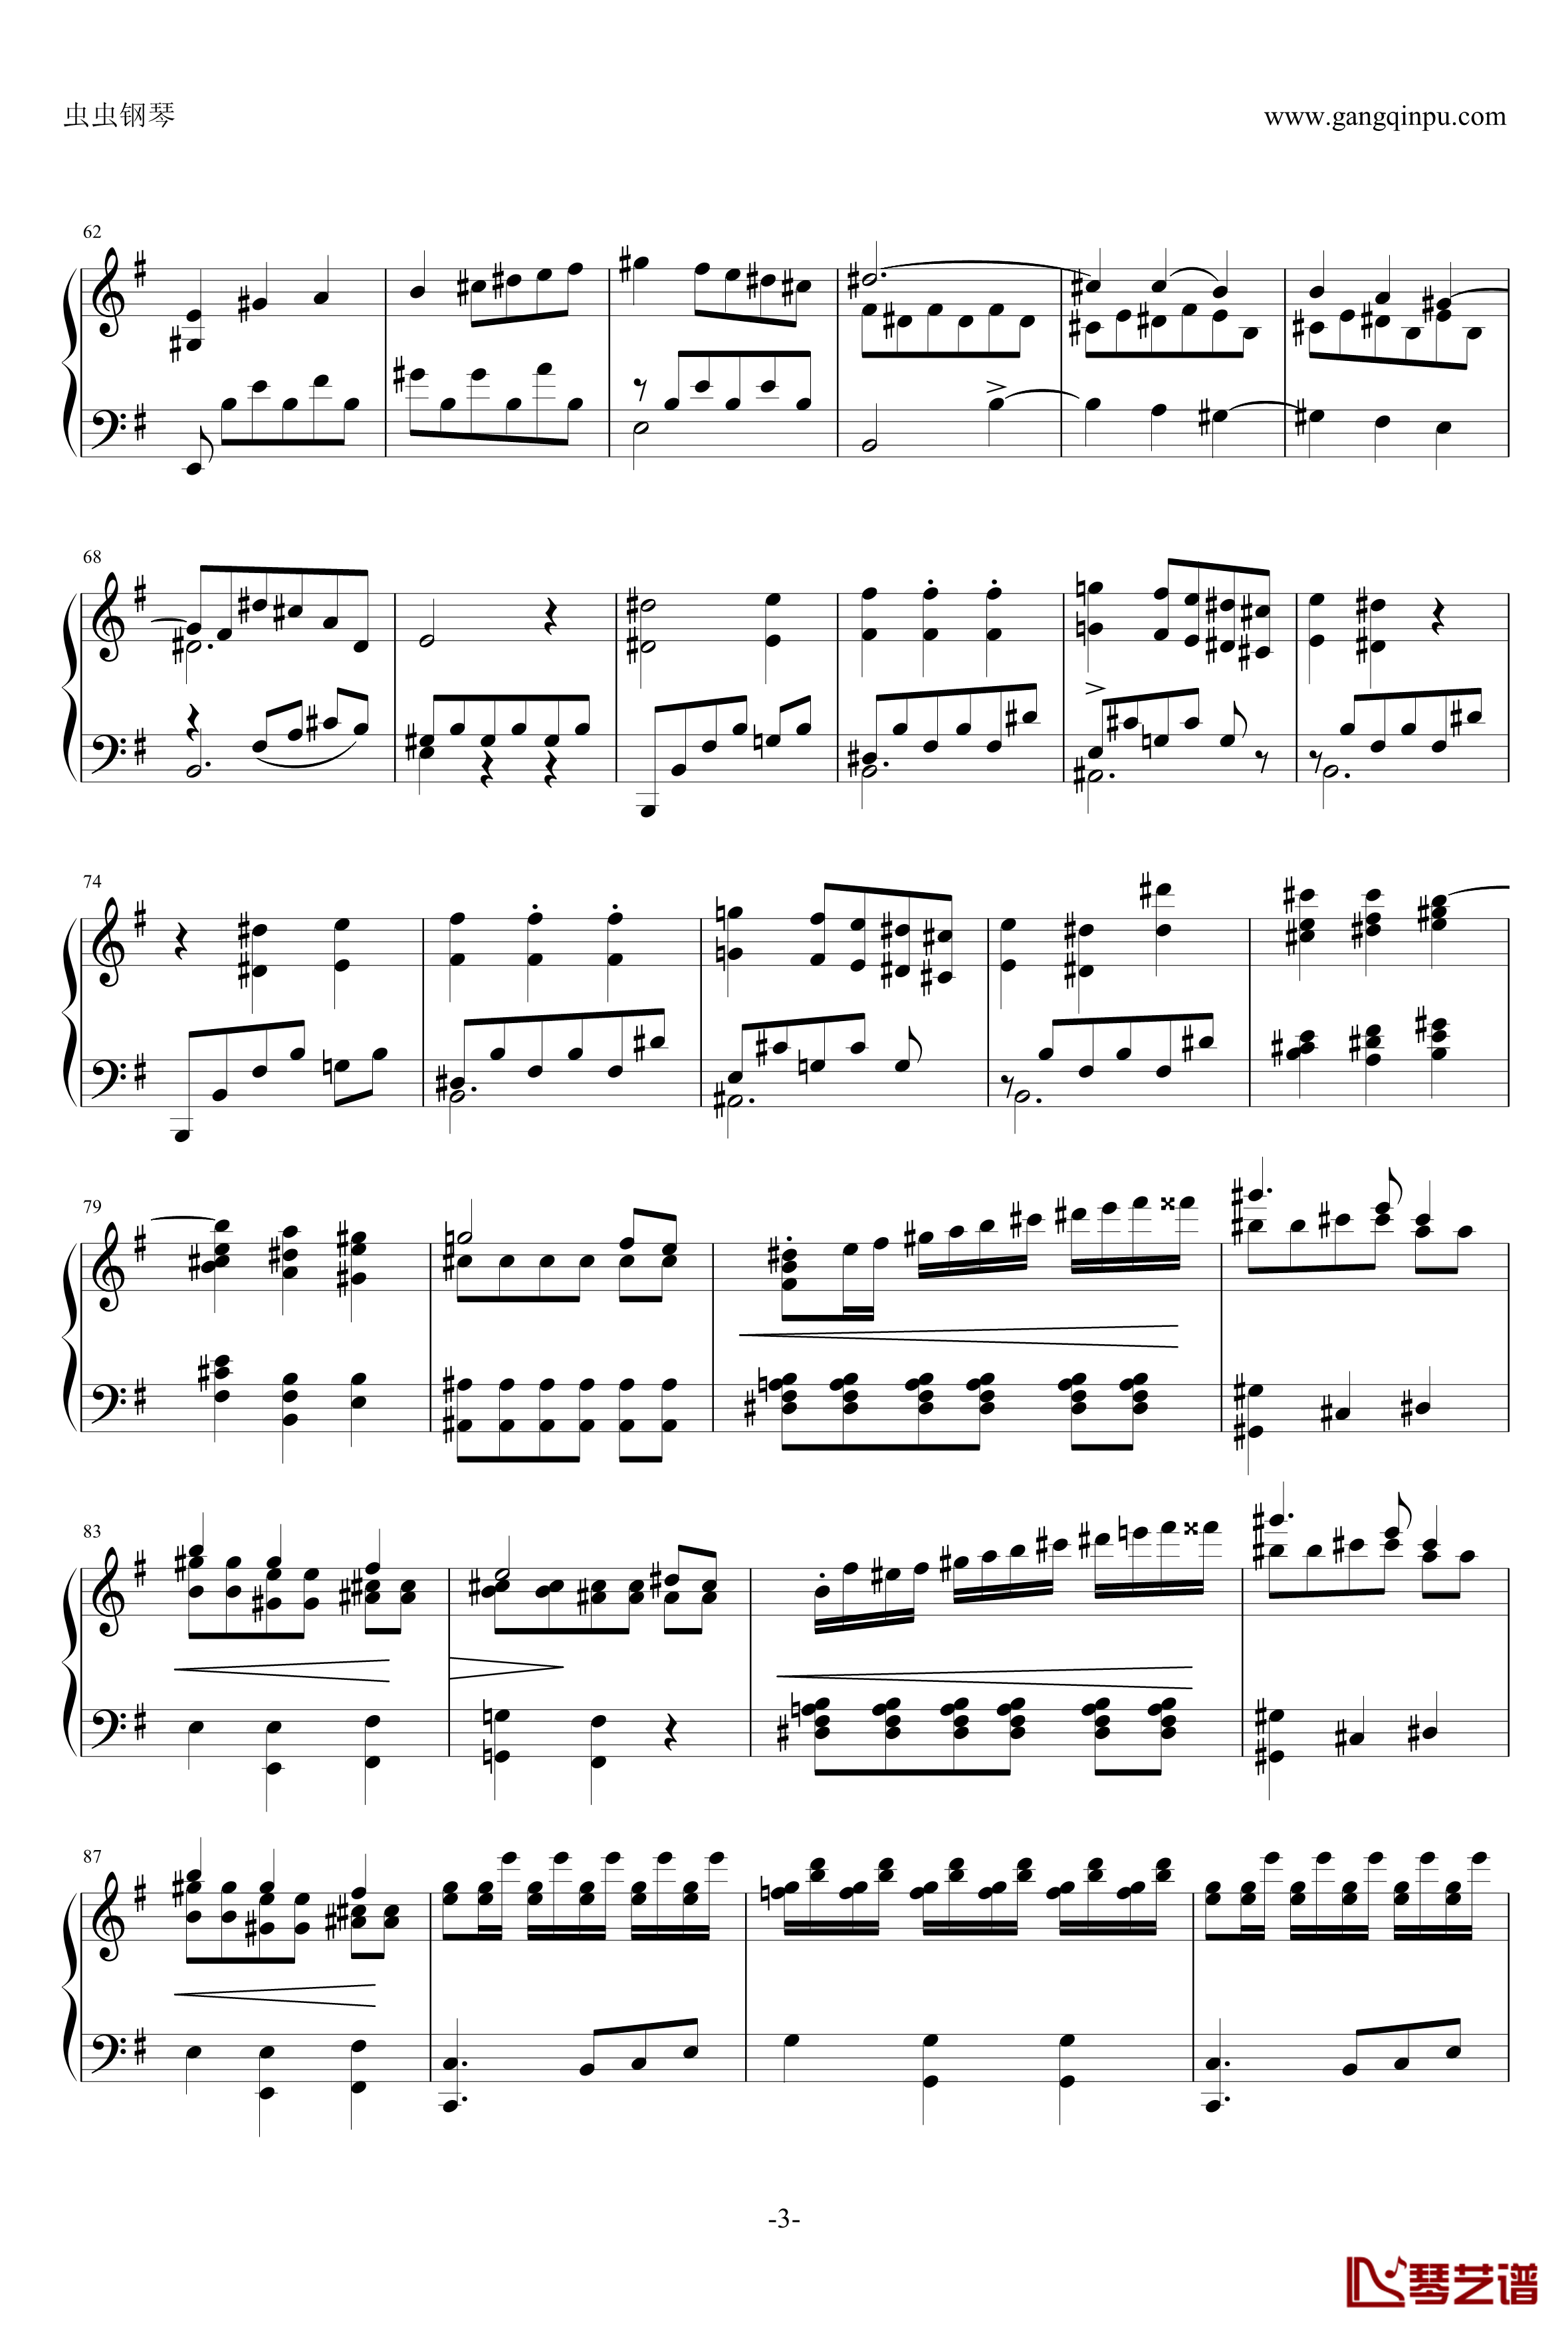 e小调钢琴协奏曲钢琴谱-乐之琴简易钢琴版-肖邦-chopin3